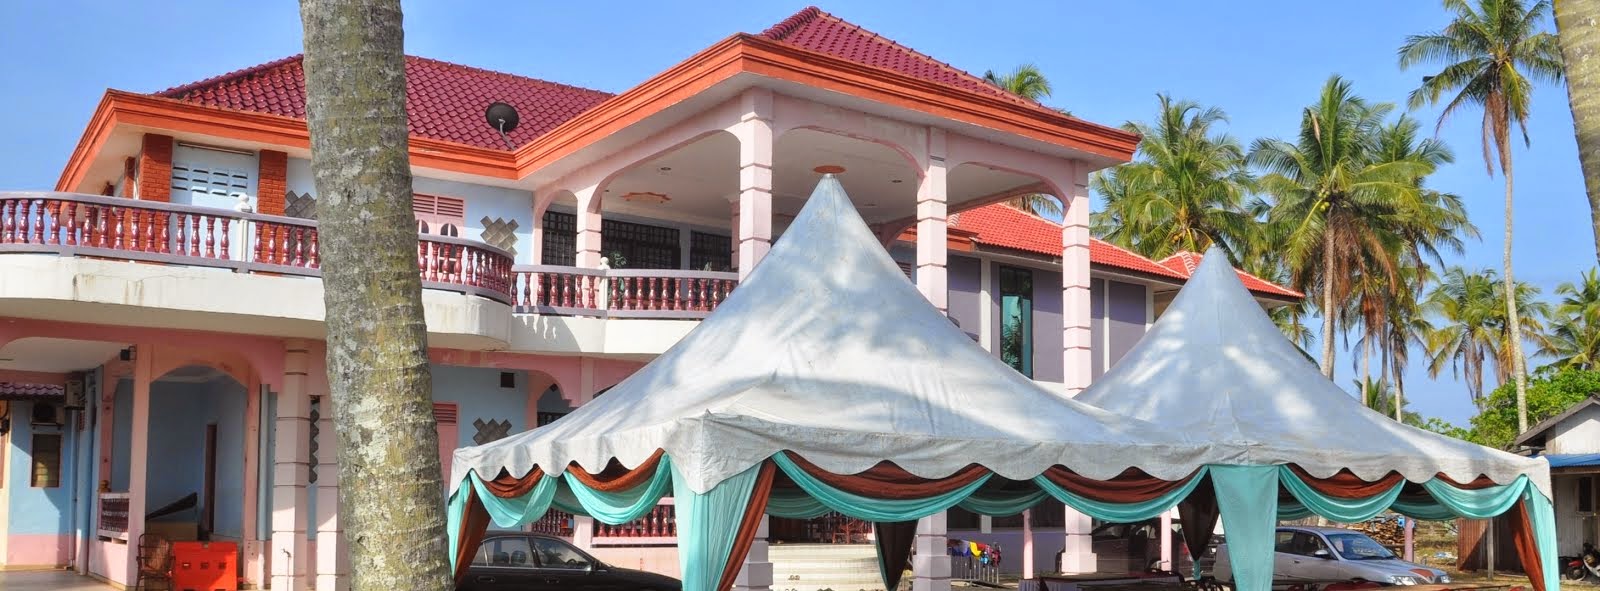 sewaan canopy Terengganu